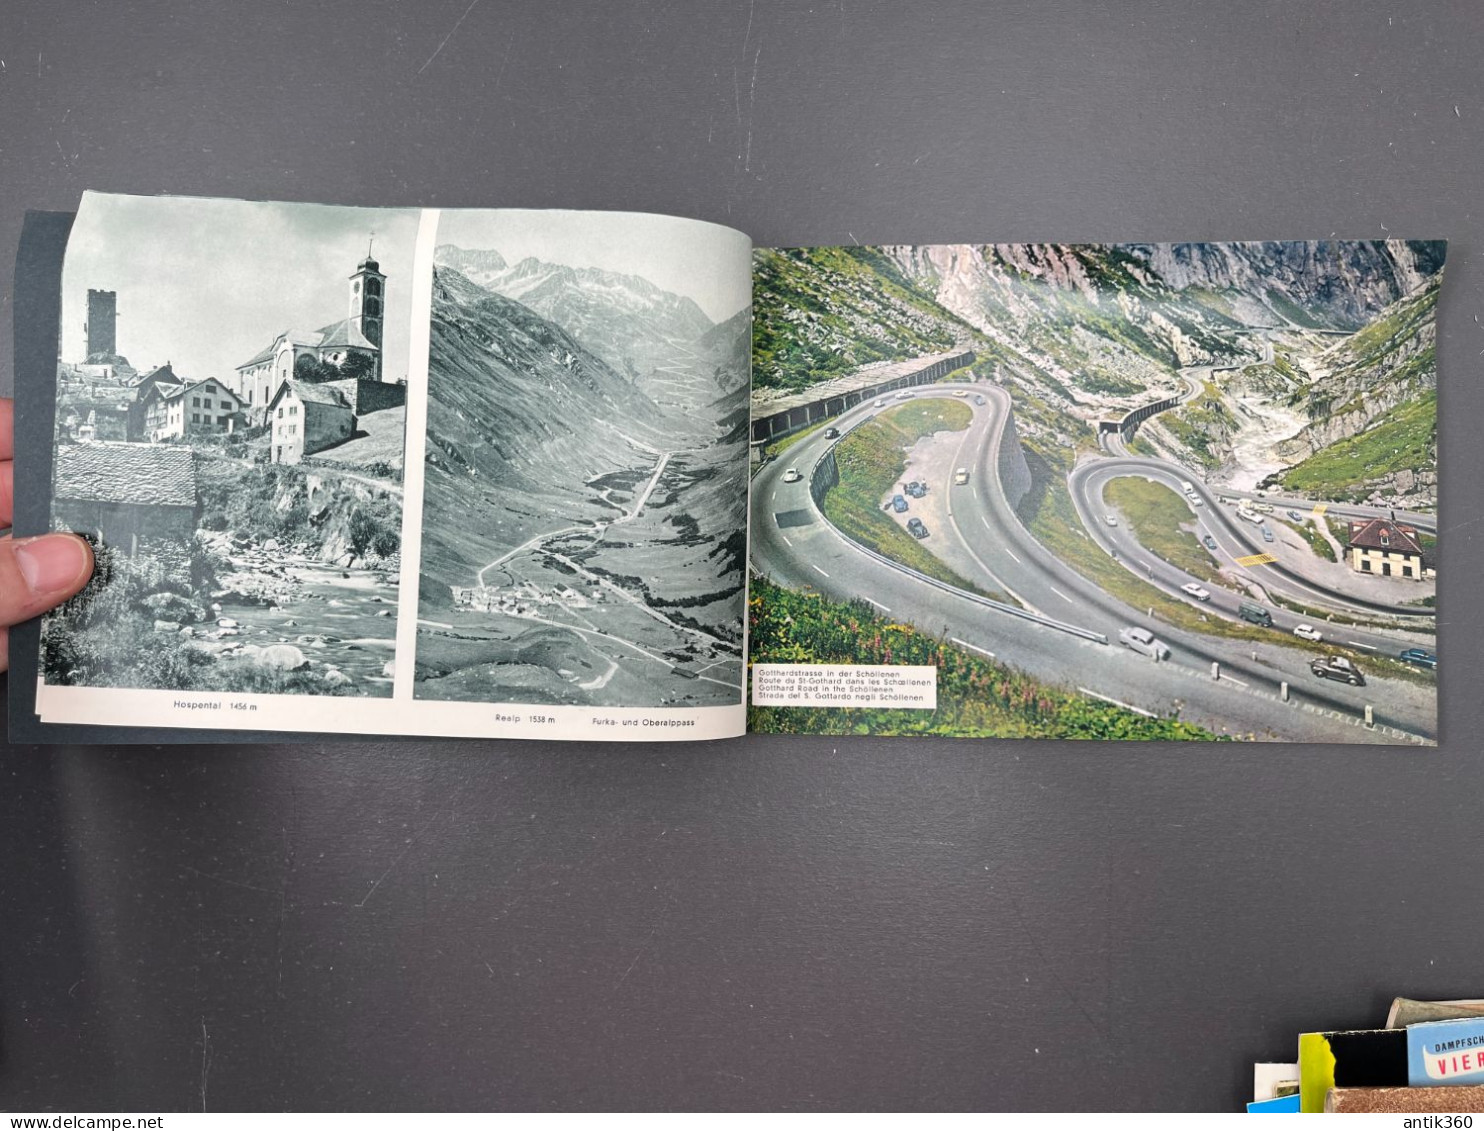 Ancienne Brochure Touristique 31 Vues / Photos GOTTHARD FURKA GRIMSEL SUSTEN Route des Alpes Suisses Suisse